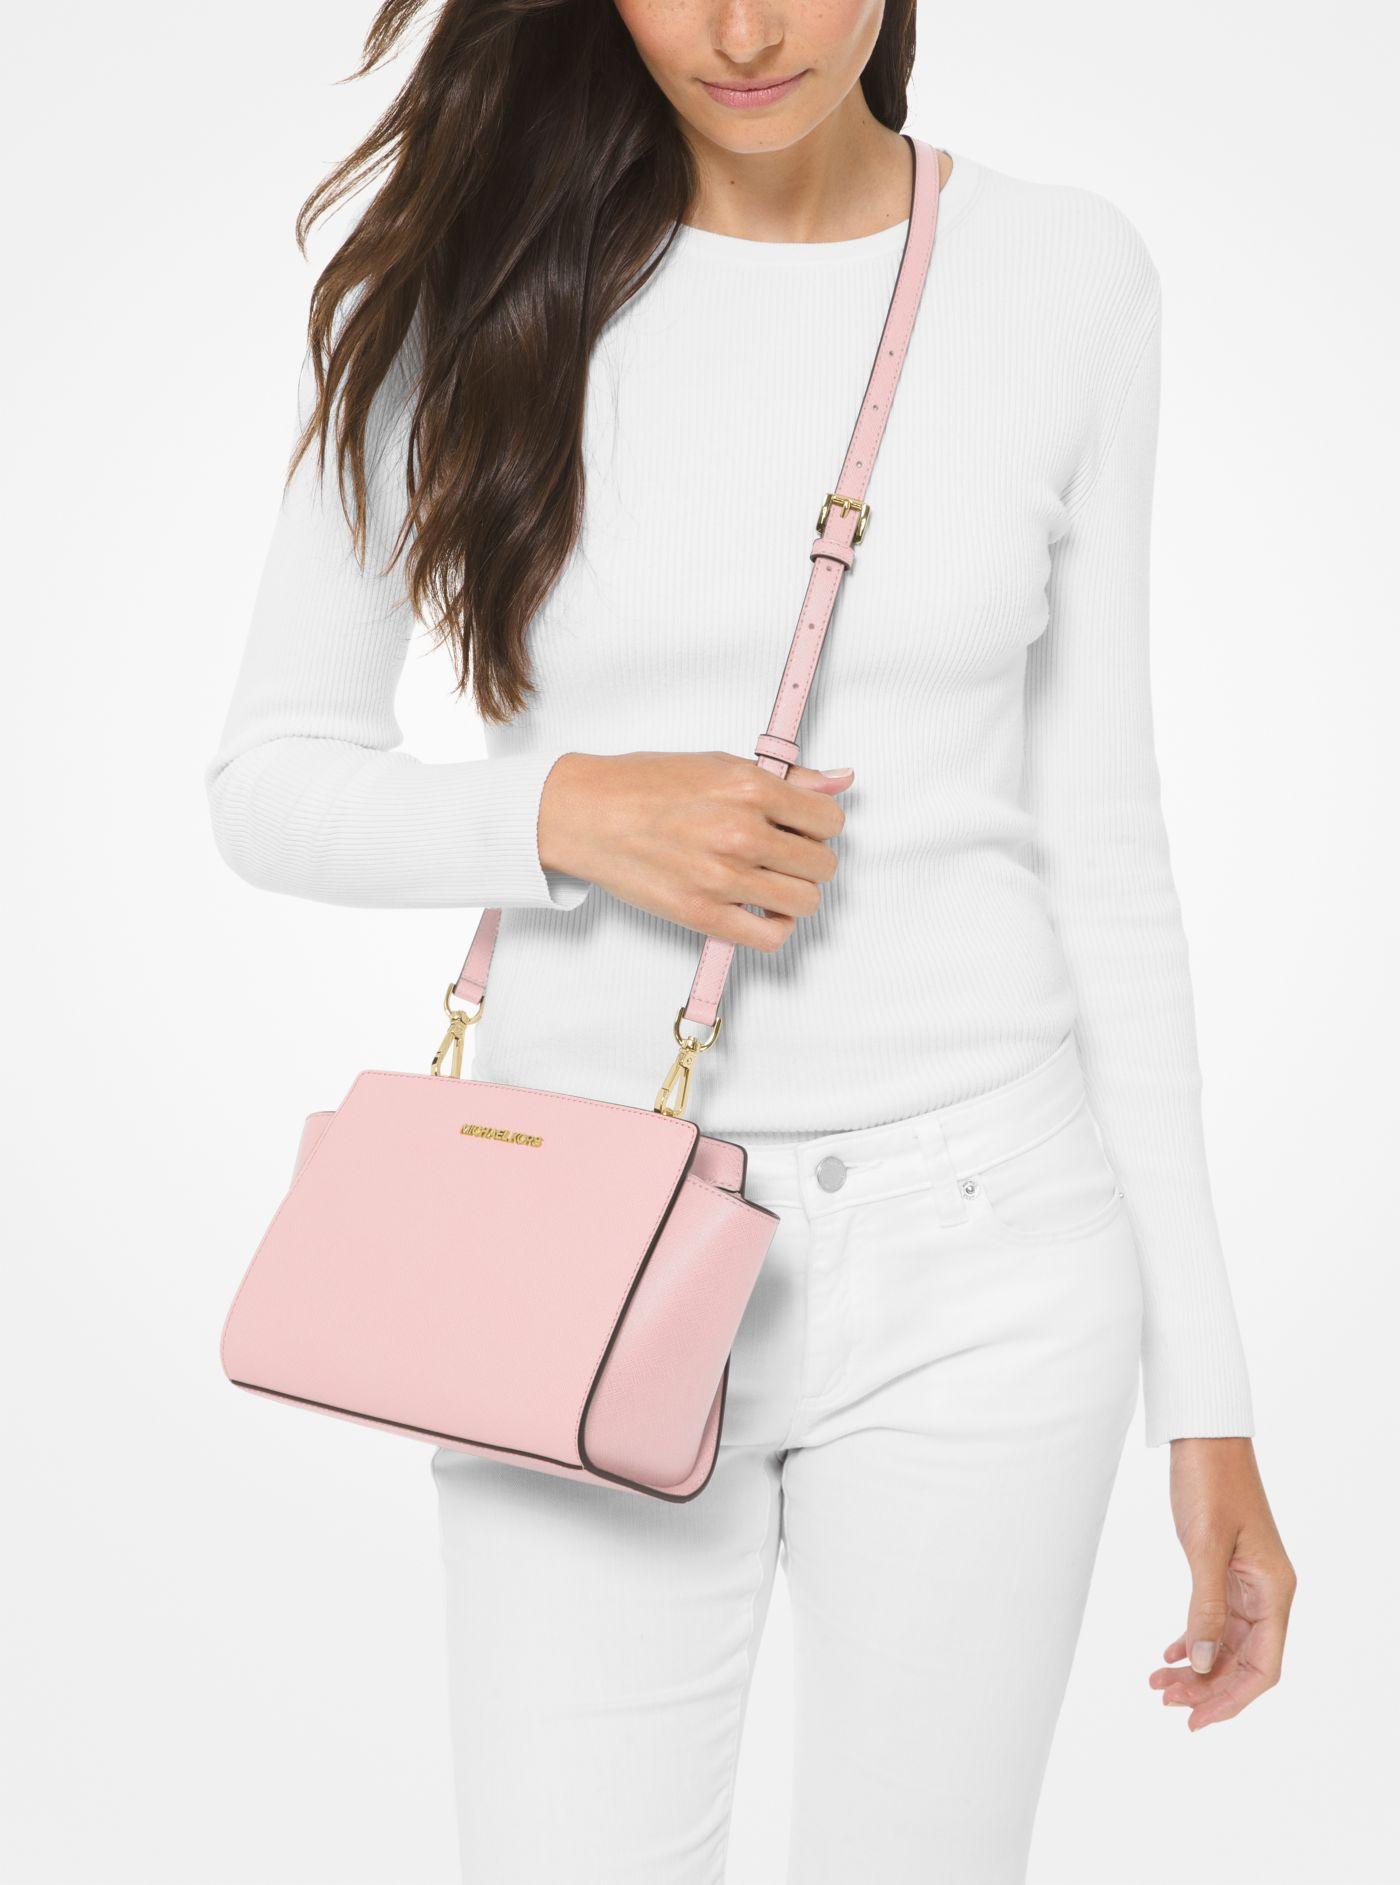 Boekwinkel Centimeter Verhoog jezelf Michael Kors Selma Medium Saffiano Leather Crossbody Bag in Pink | Lyst